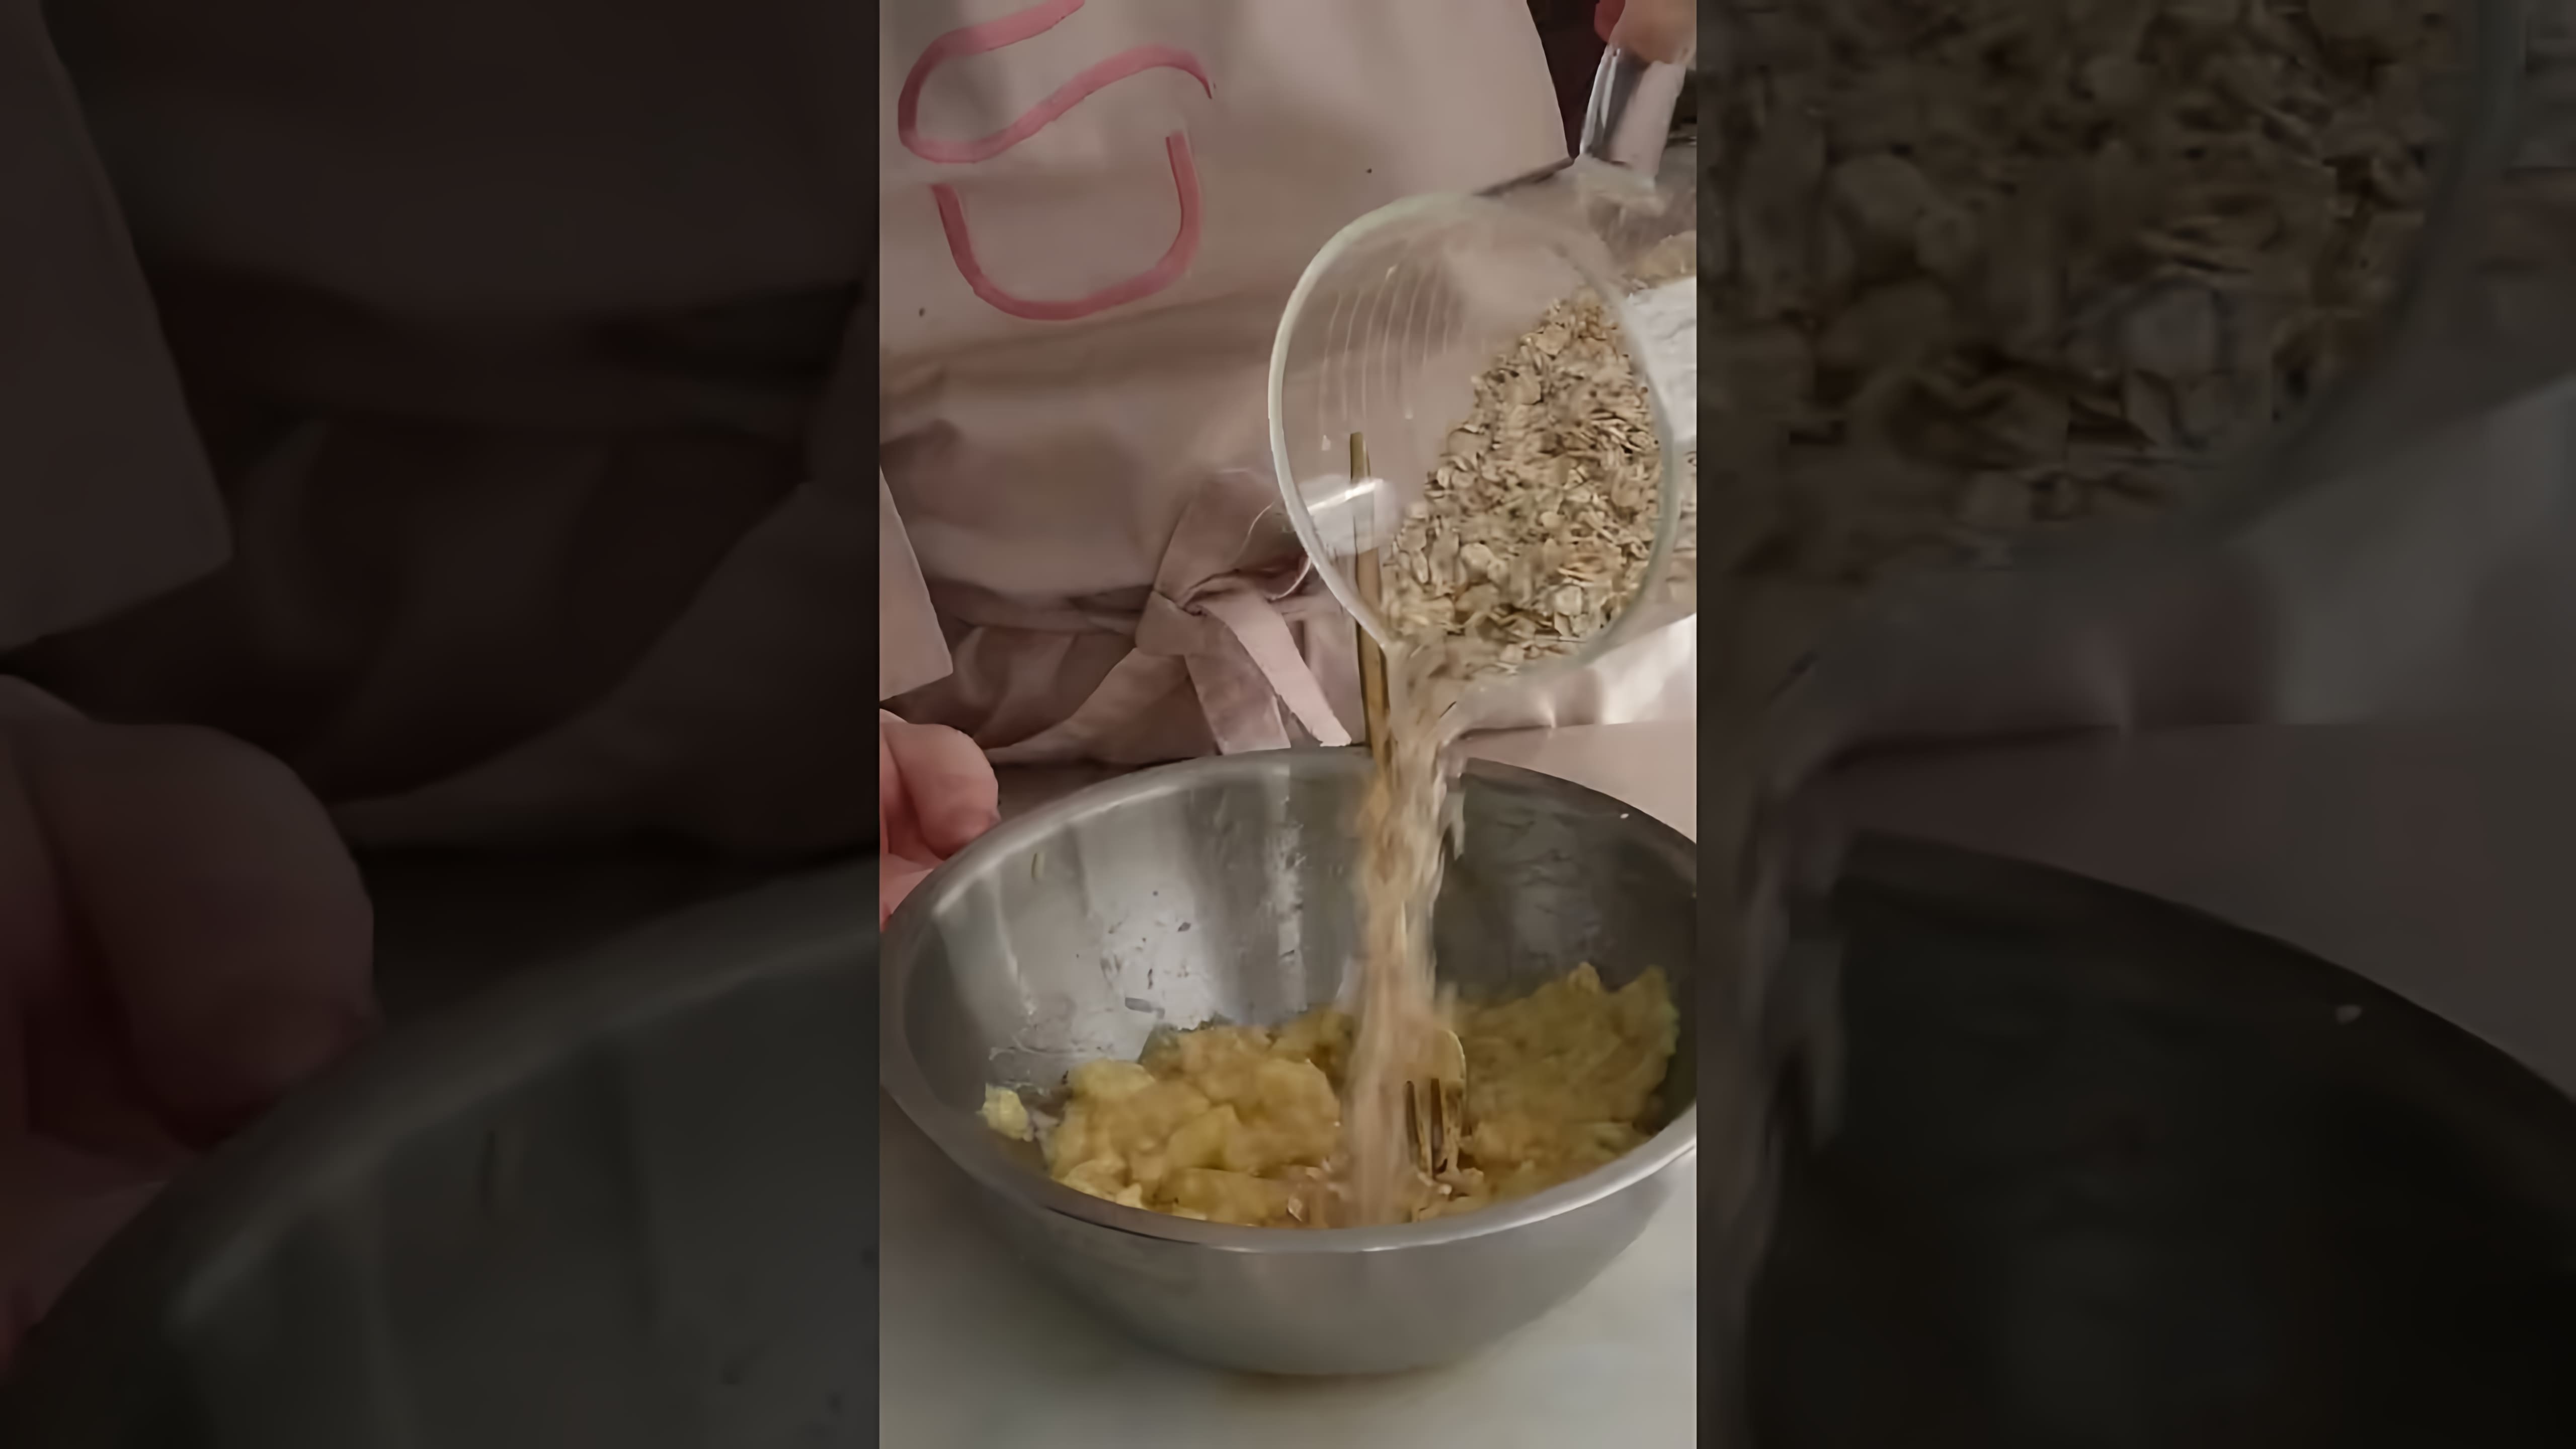 В этом видео демонстрируется процесс приготовления печенья из двух ингредиентов - бананов и овсянки